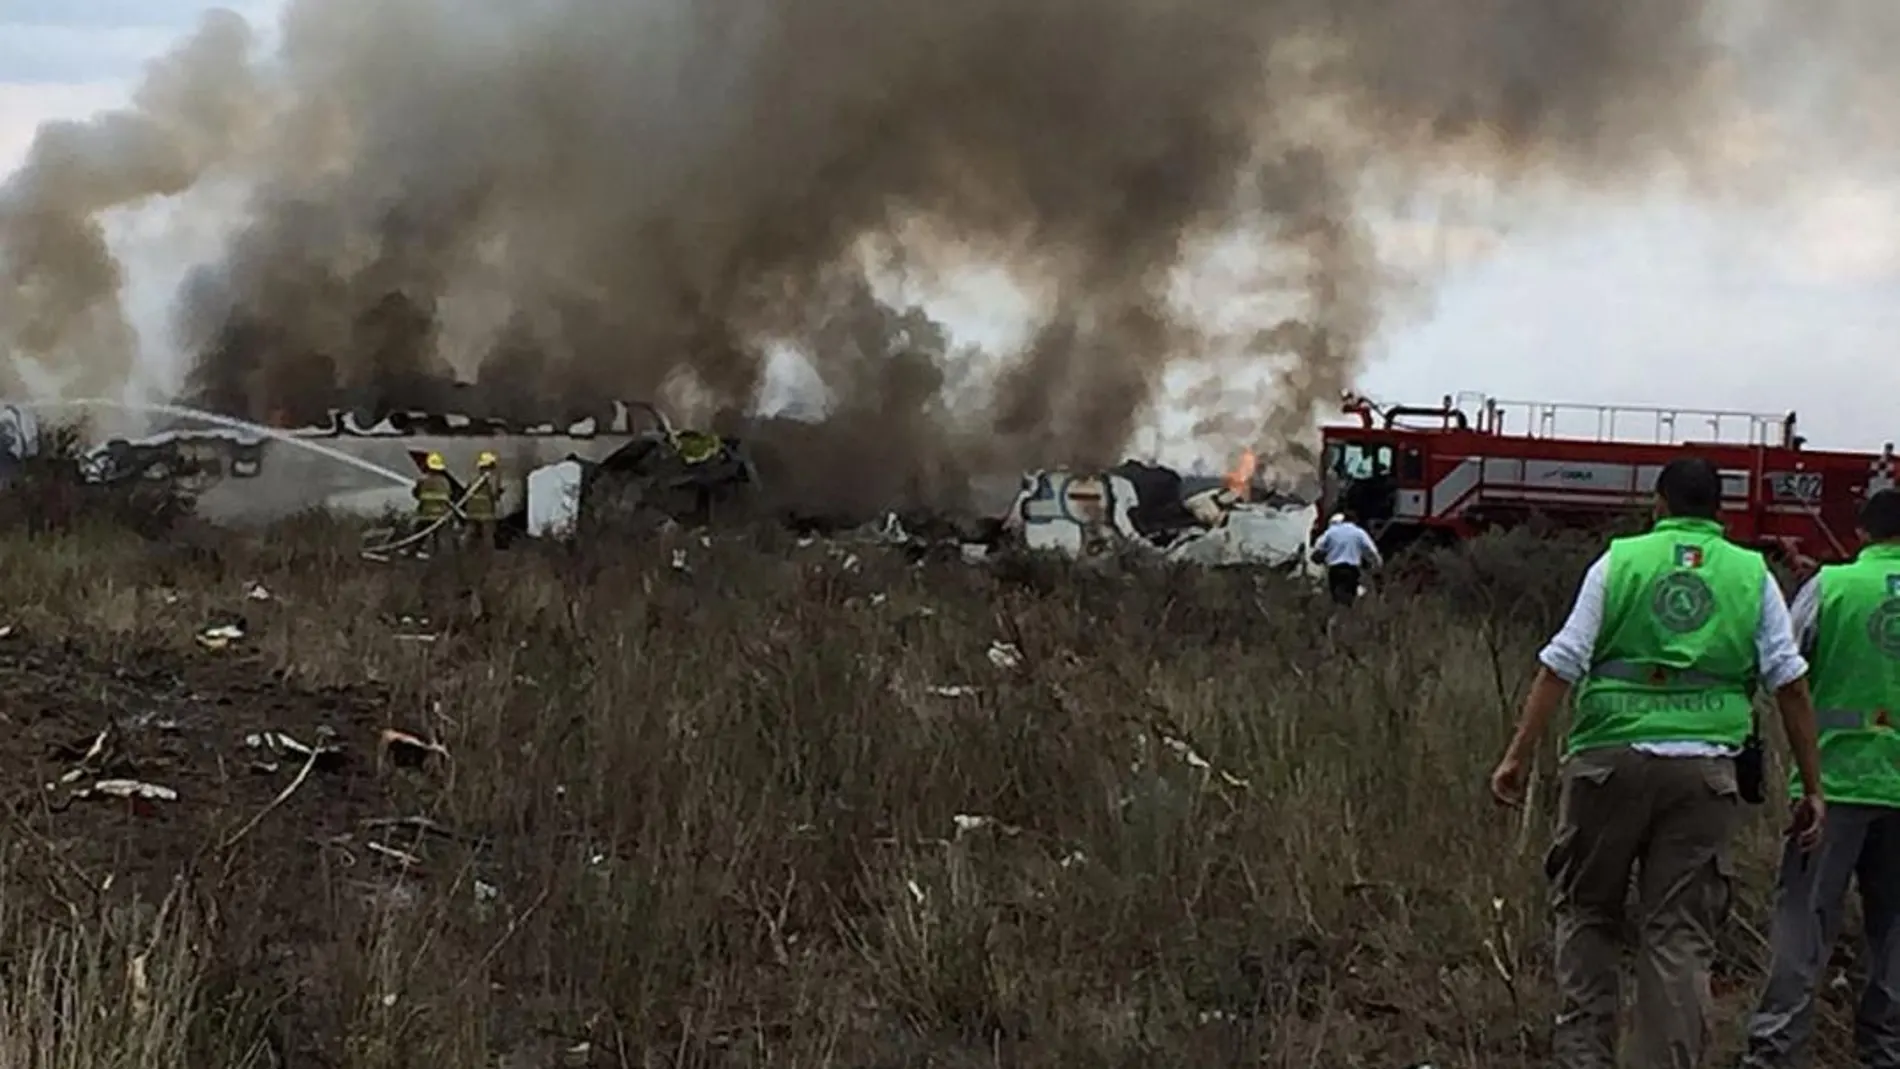 Fotografía cedida por la Coordinación Estatal de Protección Civil (CPCE) de Durango, del avión de Aeroméxico que se estrelló / Efe